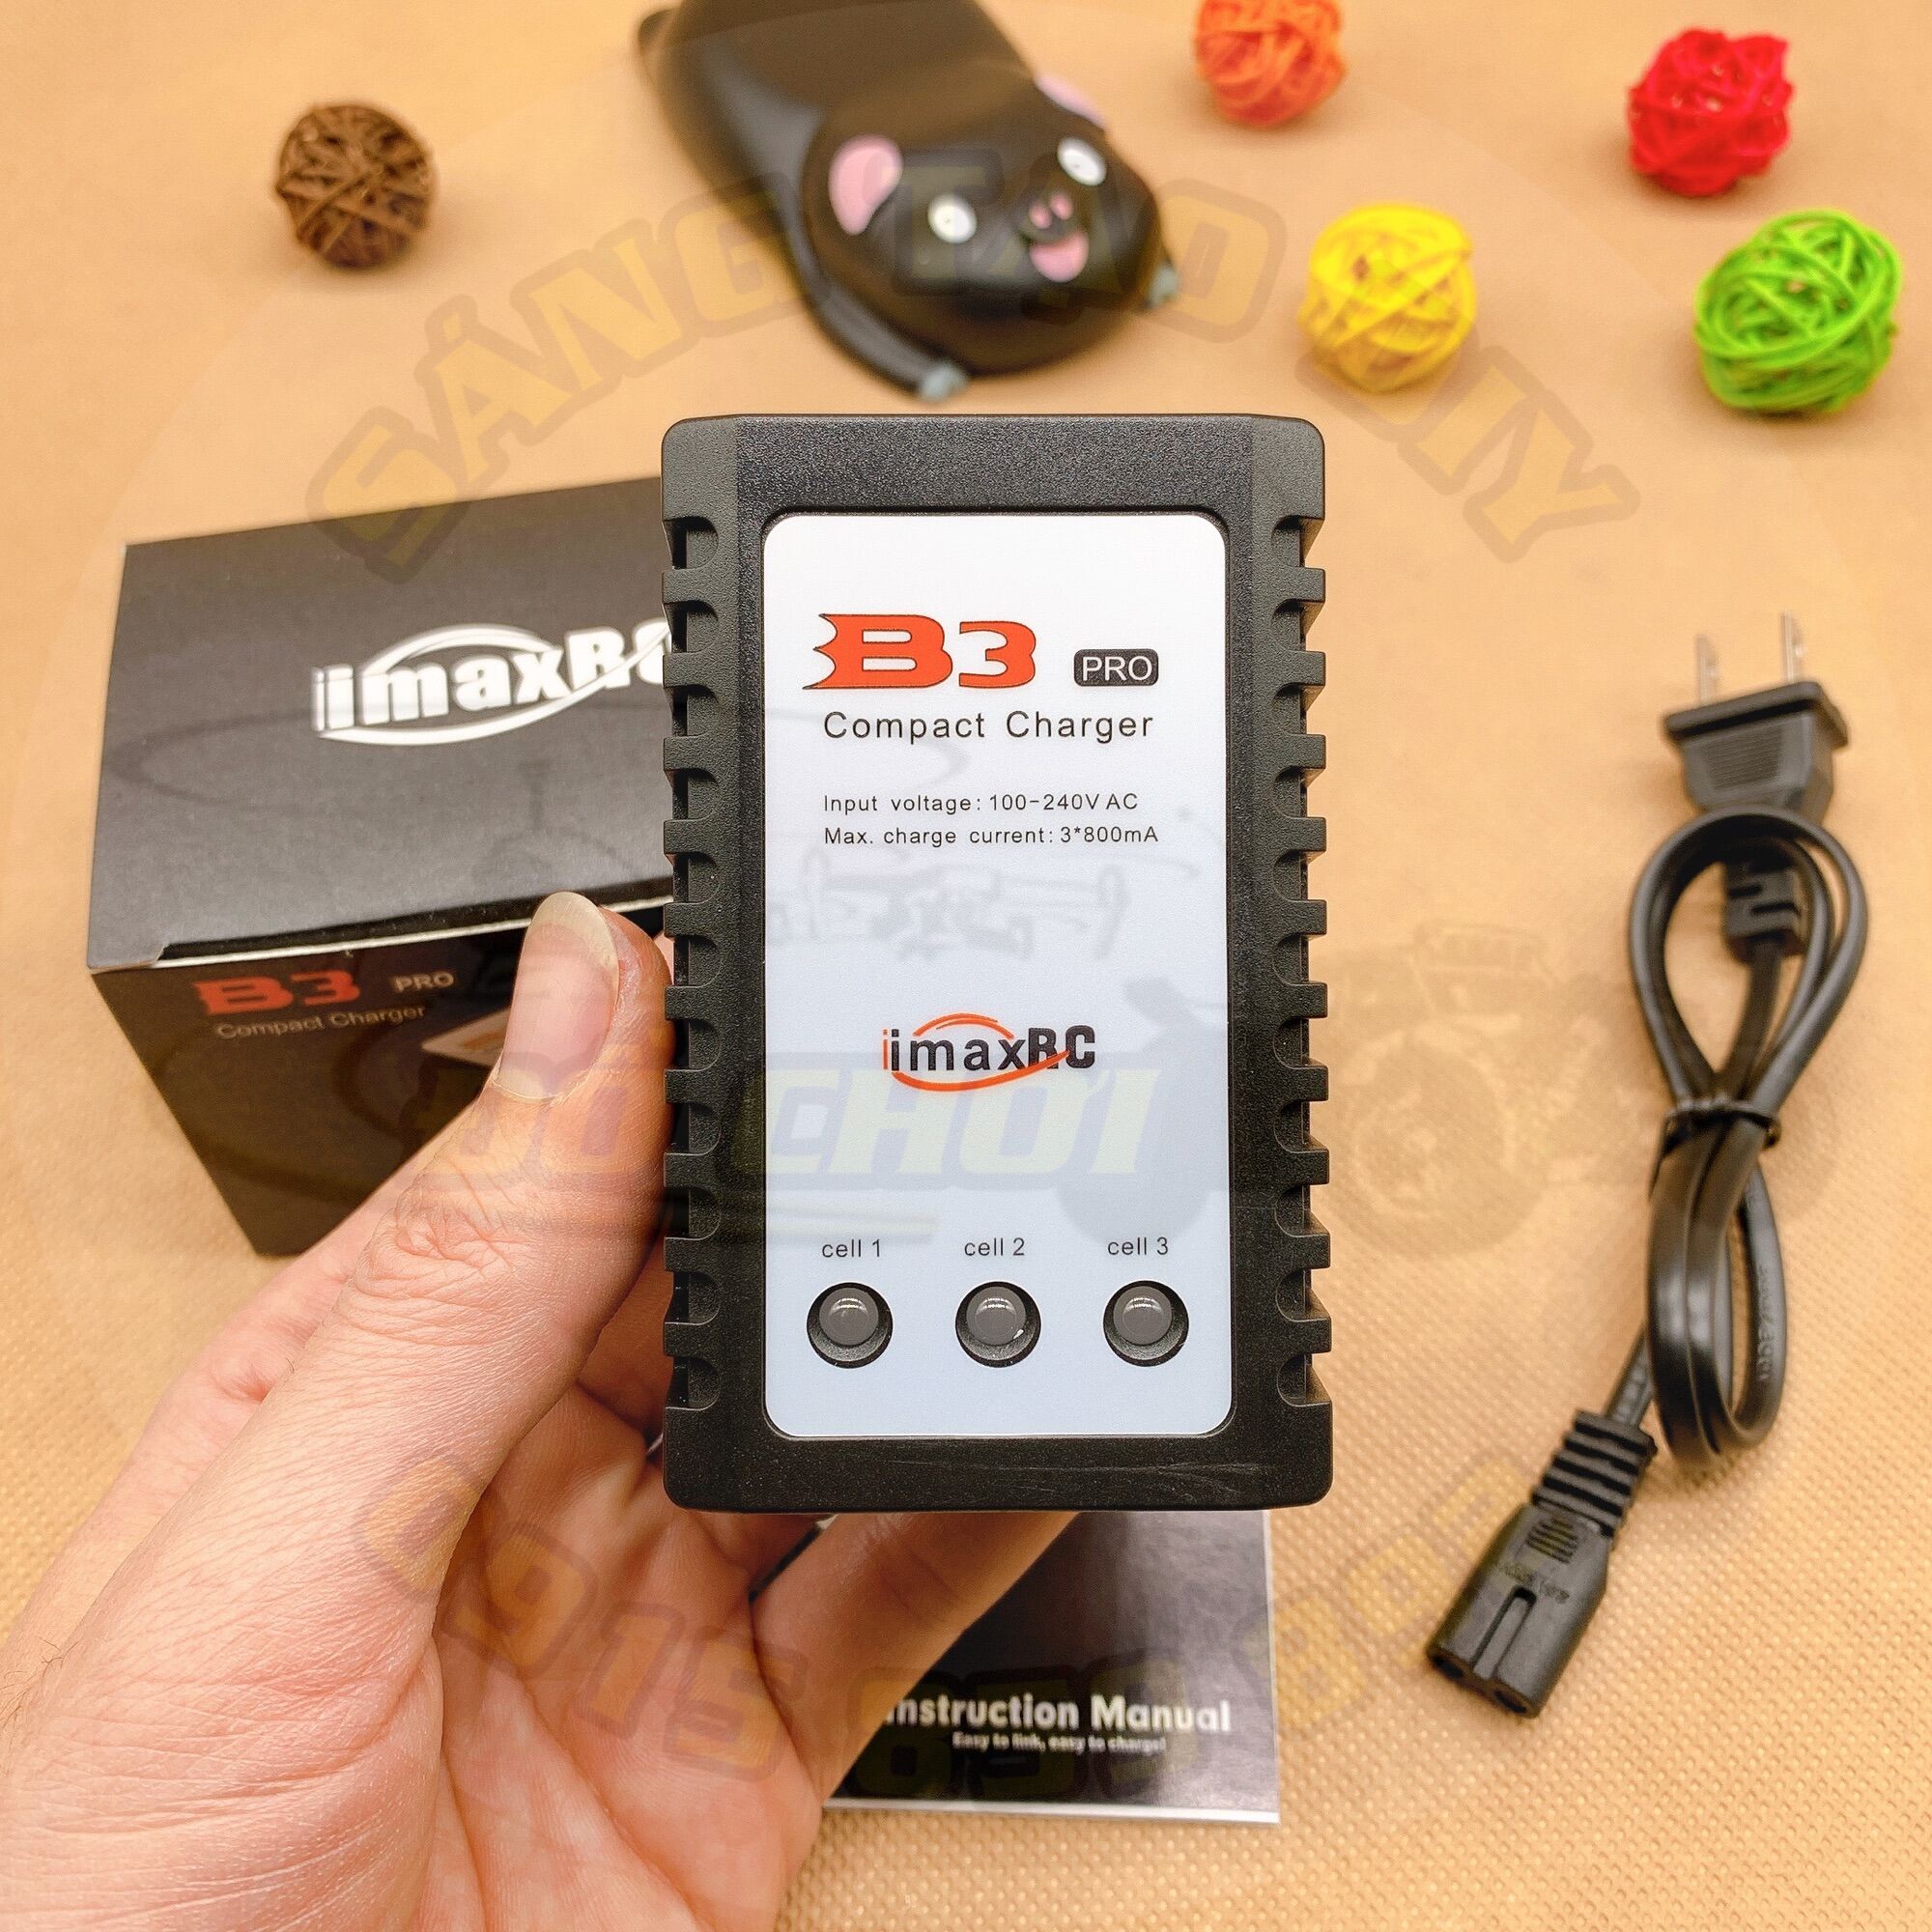 Sạc b3 pro imaxrc 800ma - sạc cân bằng pin lipo 2s 7.4v - 3s 11.1v - ảnh sản phẩm 5